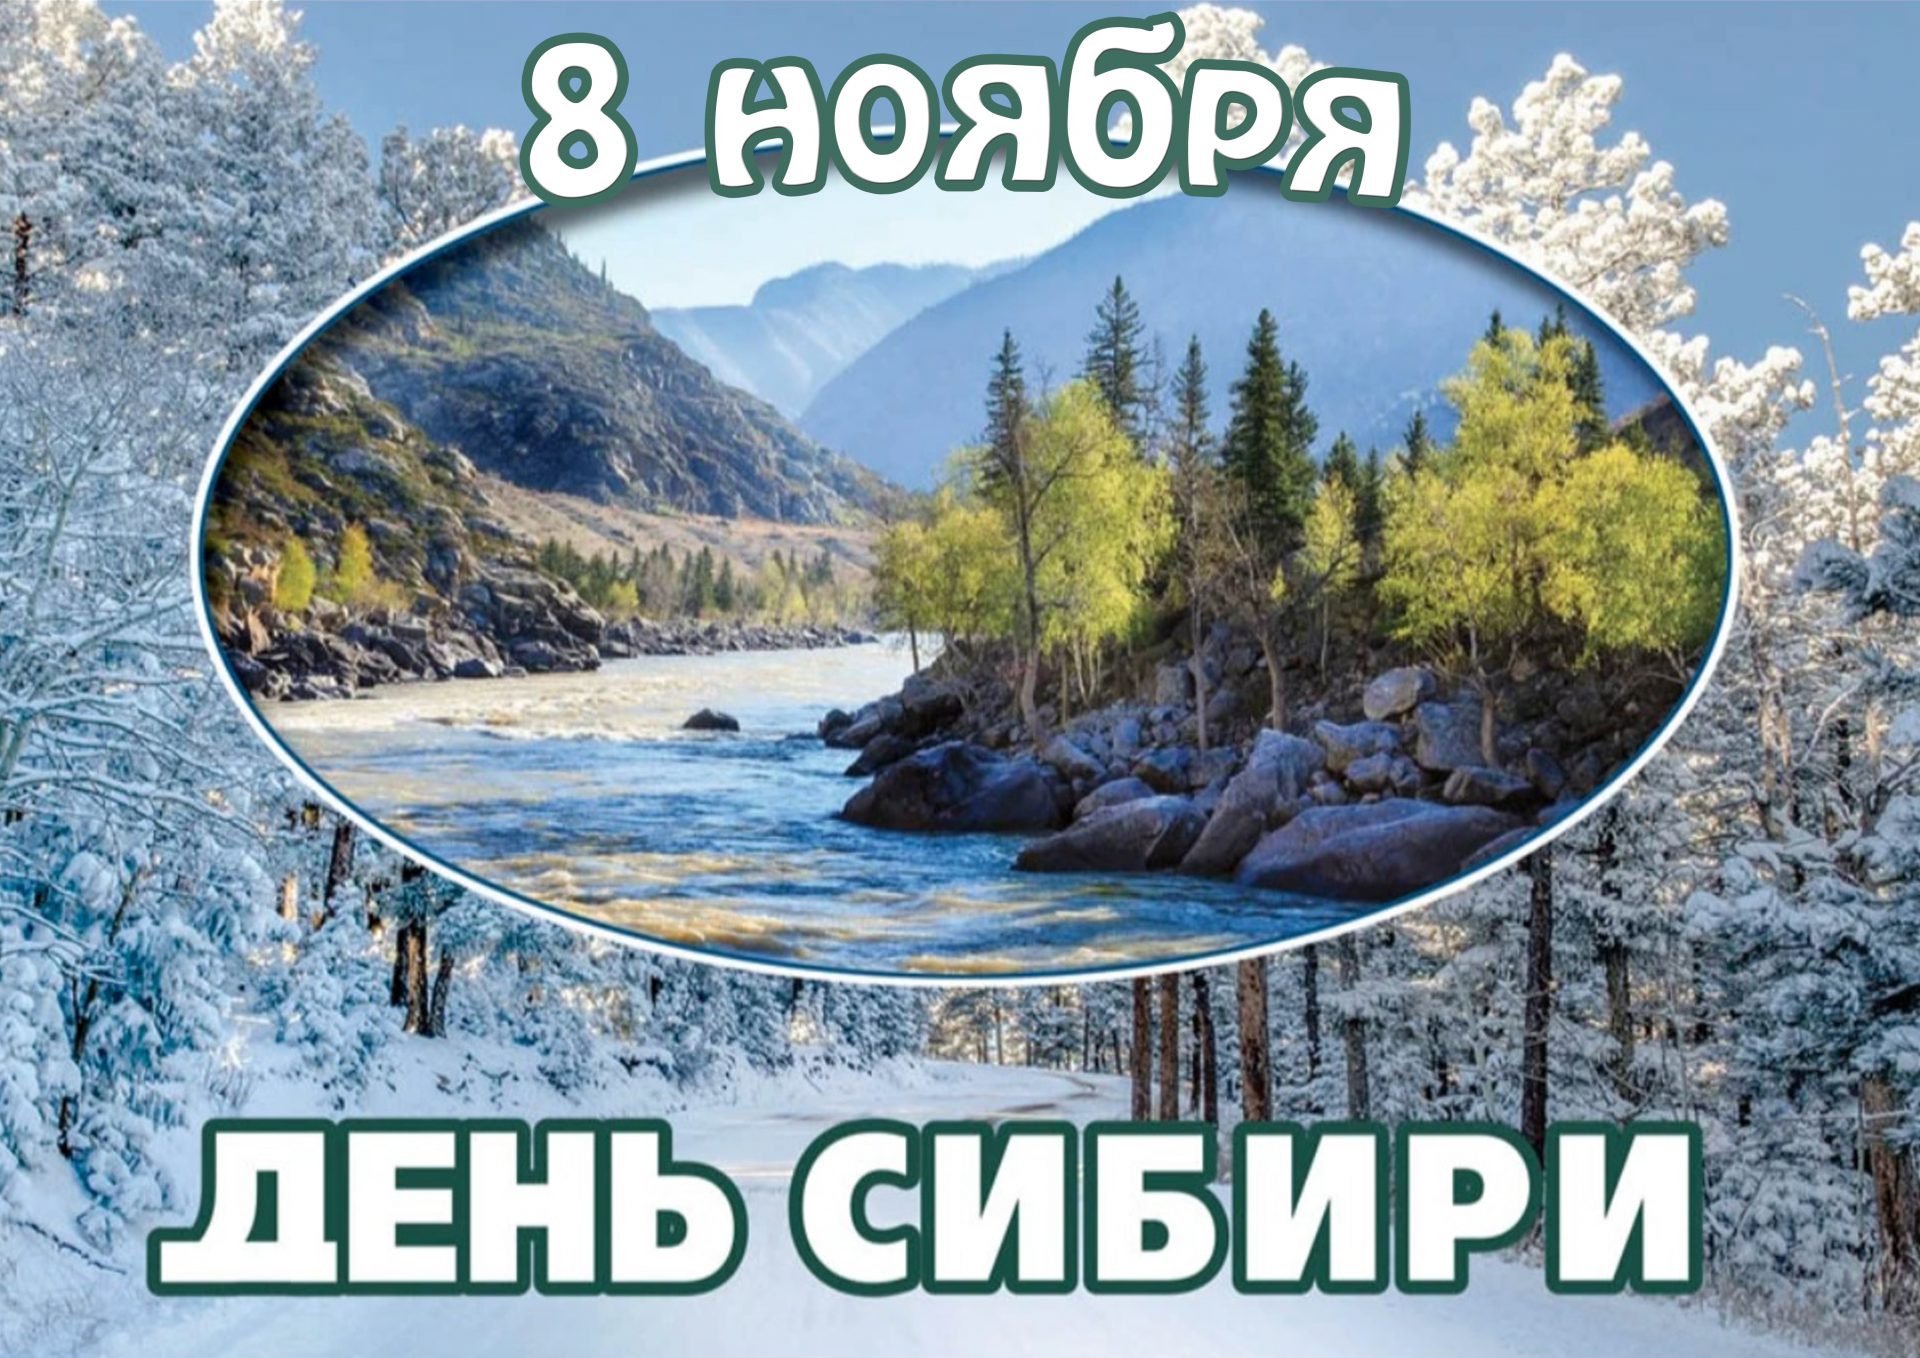 8 ноября – День Сибири: экомаршруты заповедных территорий знакомят туристов с природой и историей региона - фото 1